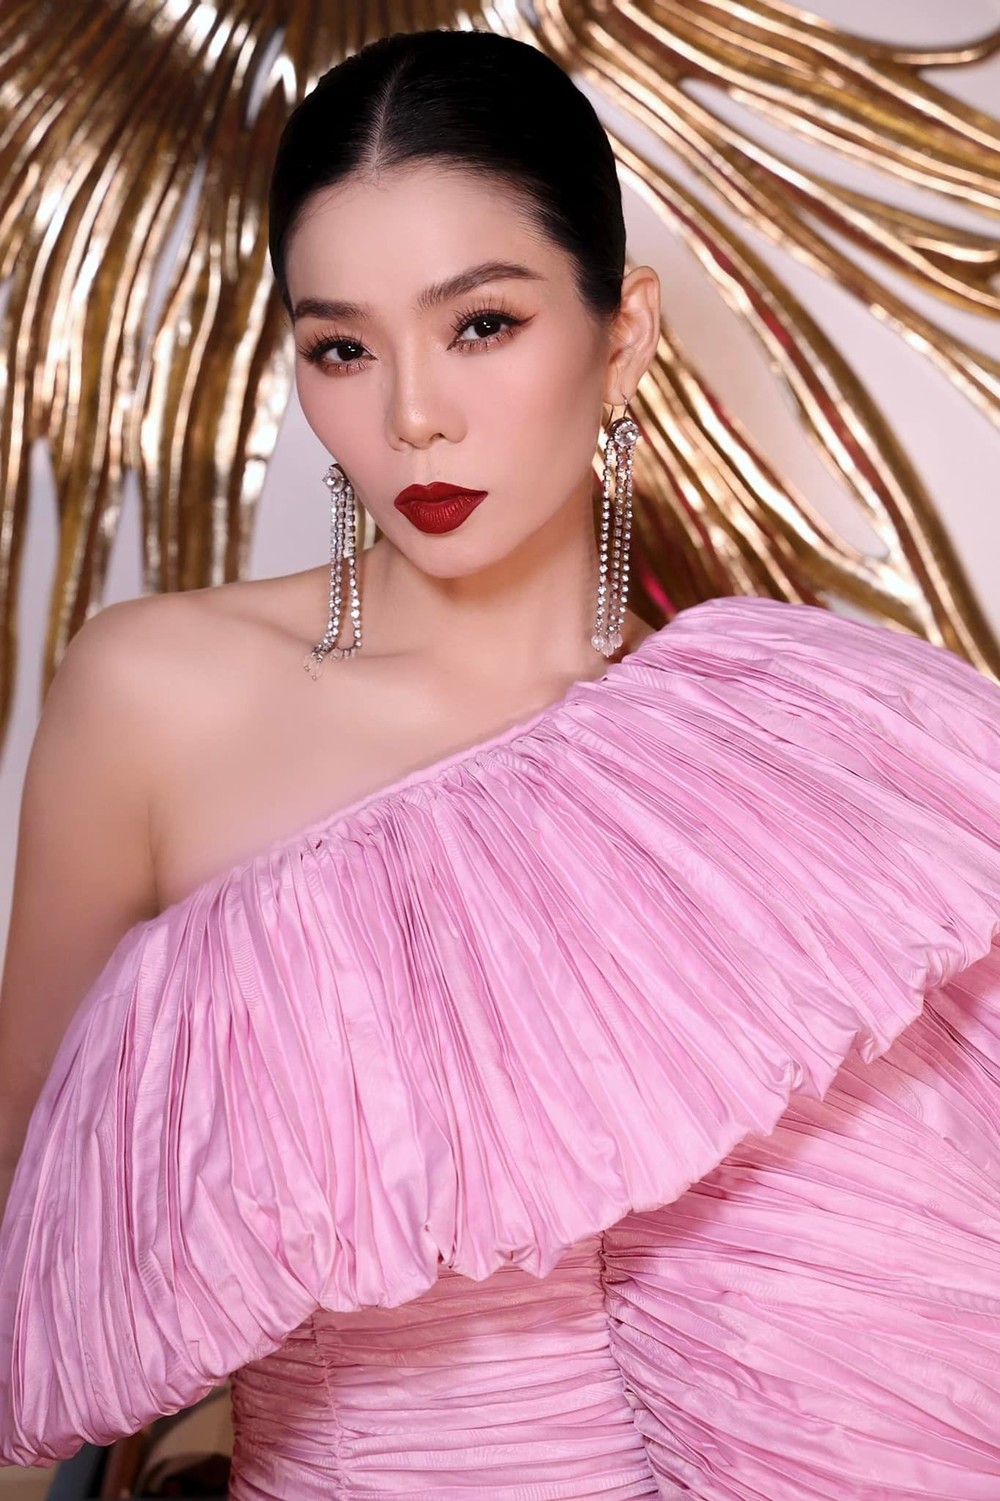 Chiếc váy hồng hot nhất hiện nay: Hội mỹ nhân Việt, Hàn lẫn Thái tranh nhau diện, Baifern - Bích Phương vẫn đỉnh nhất